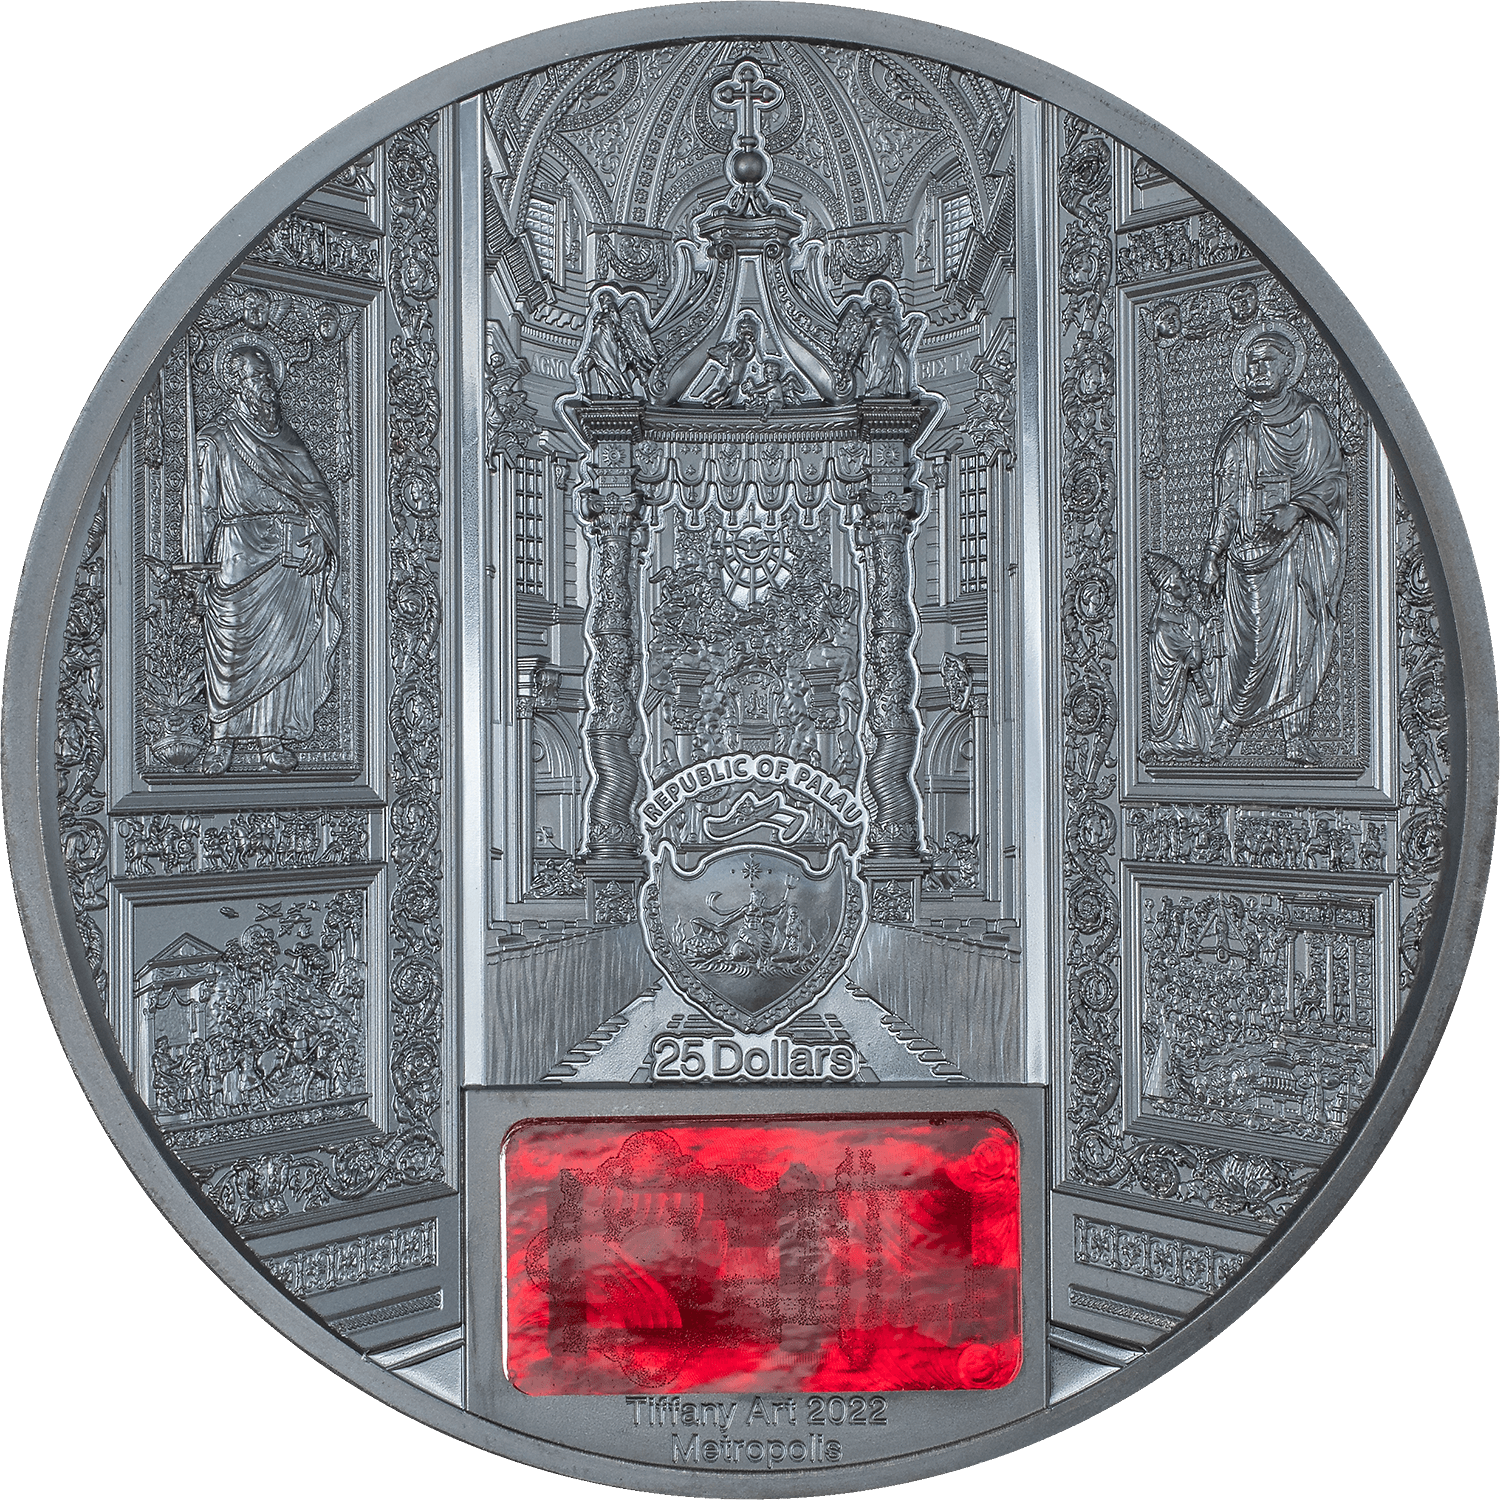 SAN PIETRO IN VATICANO Tiffany Art 5 Oz Silver Coin $25 Palau 2022 - PARTHAVA COIN